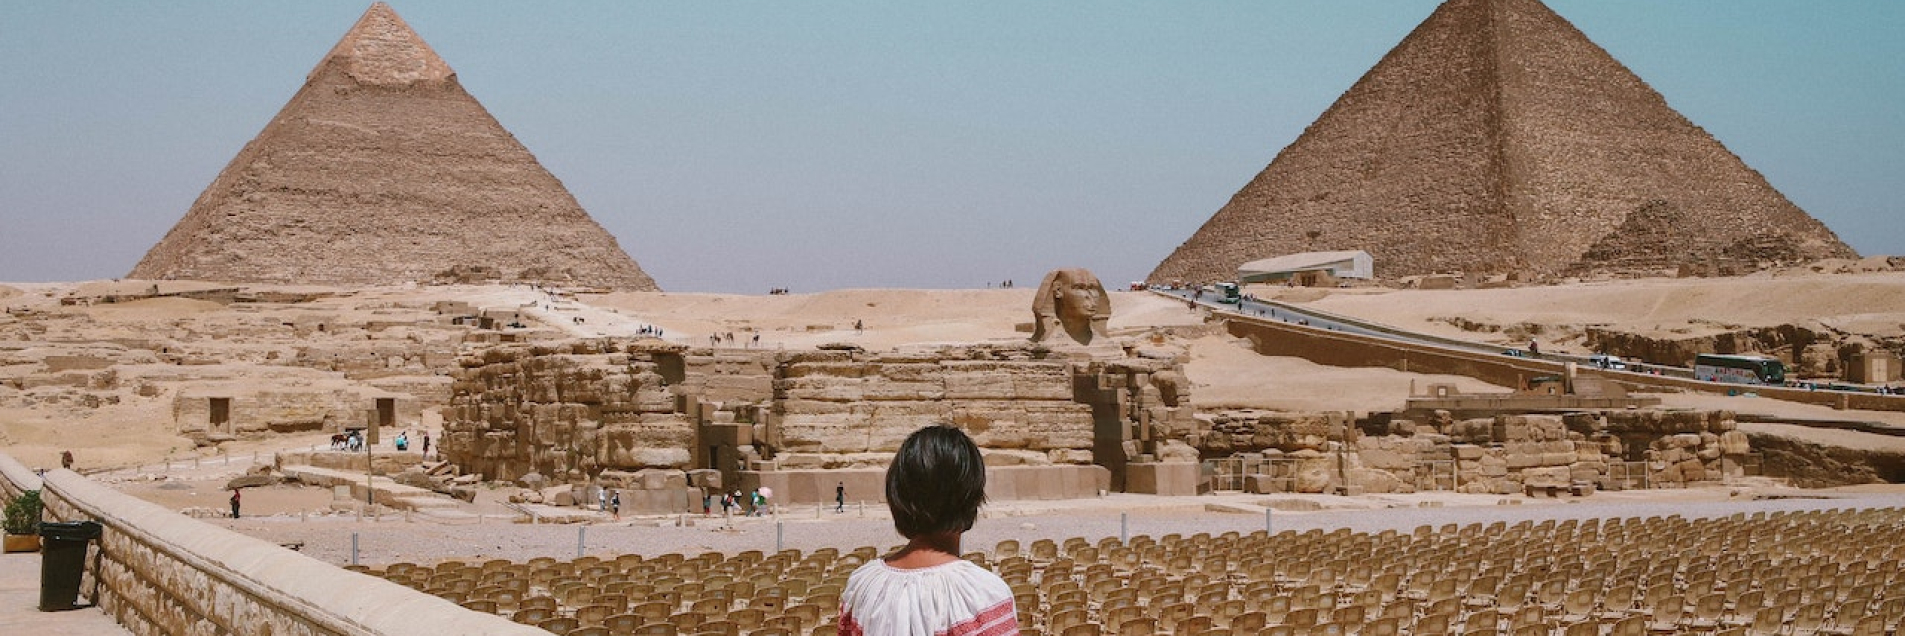 L'Égypte vue par Sophie Linaires 